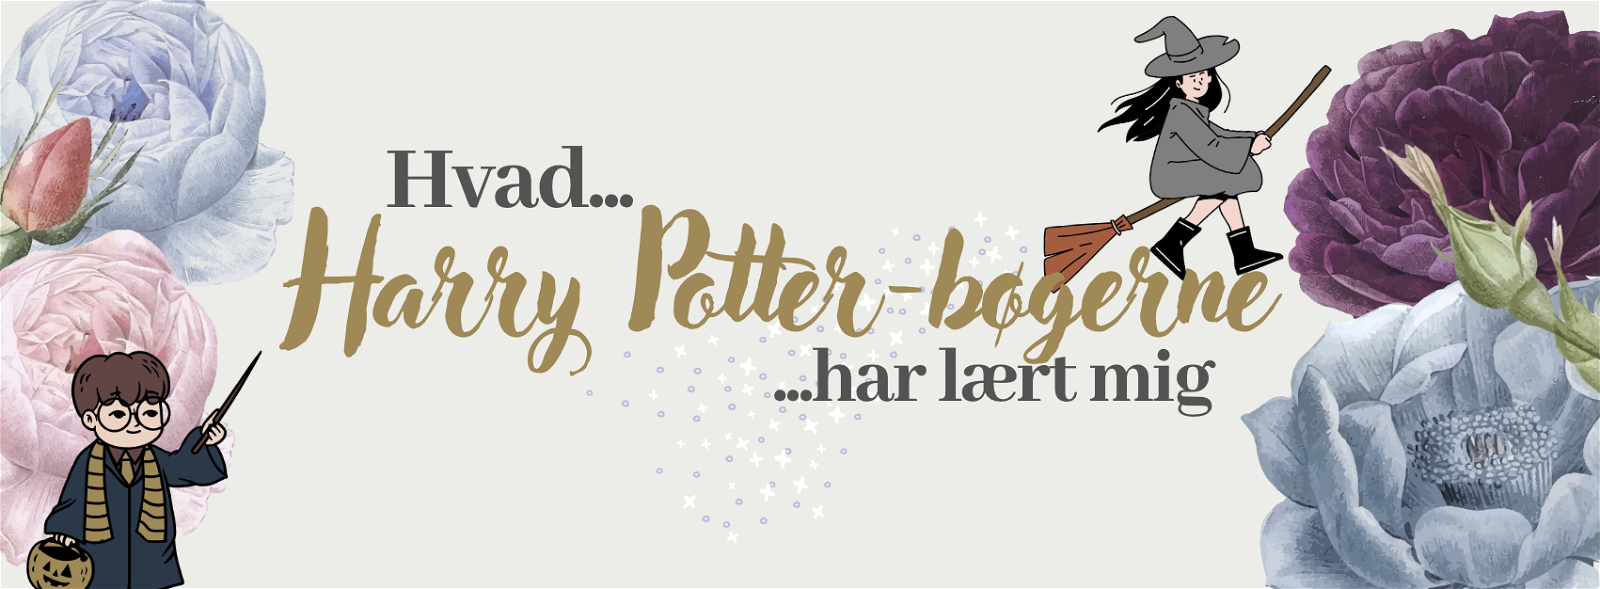 Hvad Harry Potter-bøgerne har lært mig